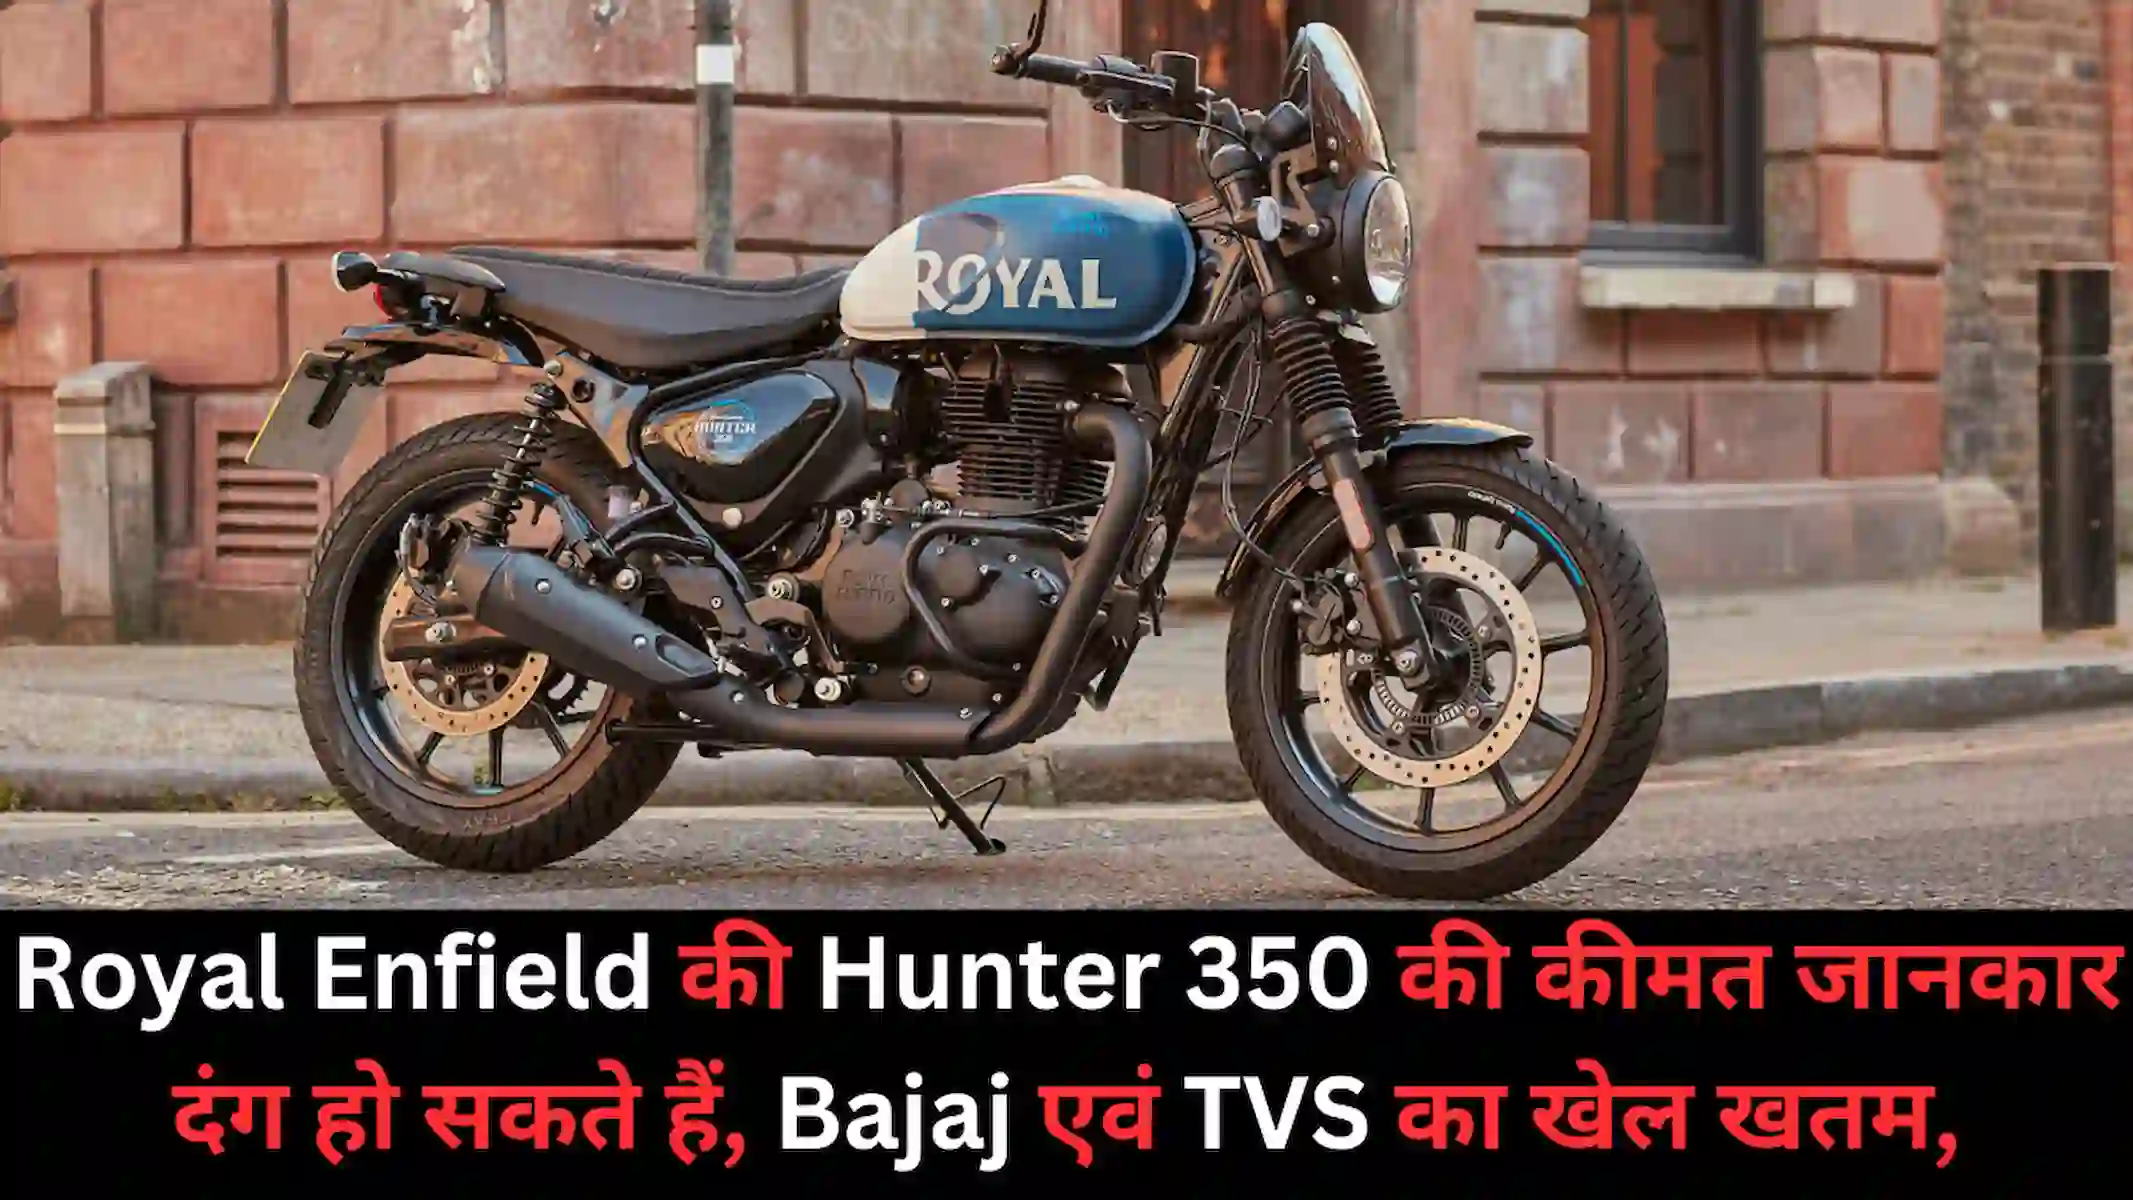 Royal Enfield की Hunter 350 की कीमत जानकार दंग हो सकते हैं, Bajaj एवं TVS का खेल खतम